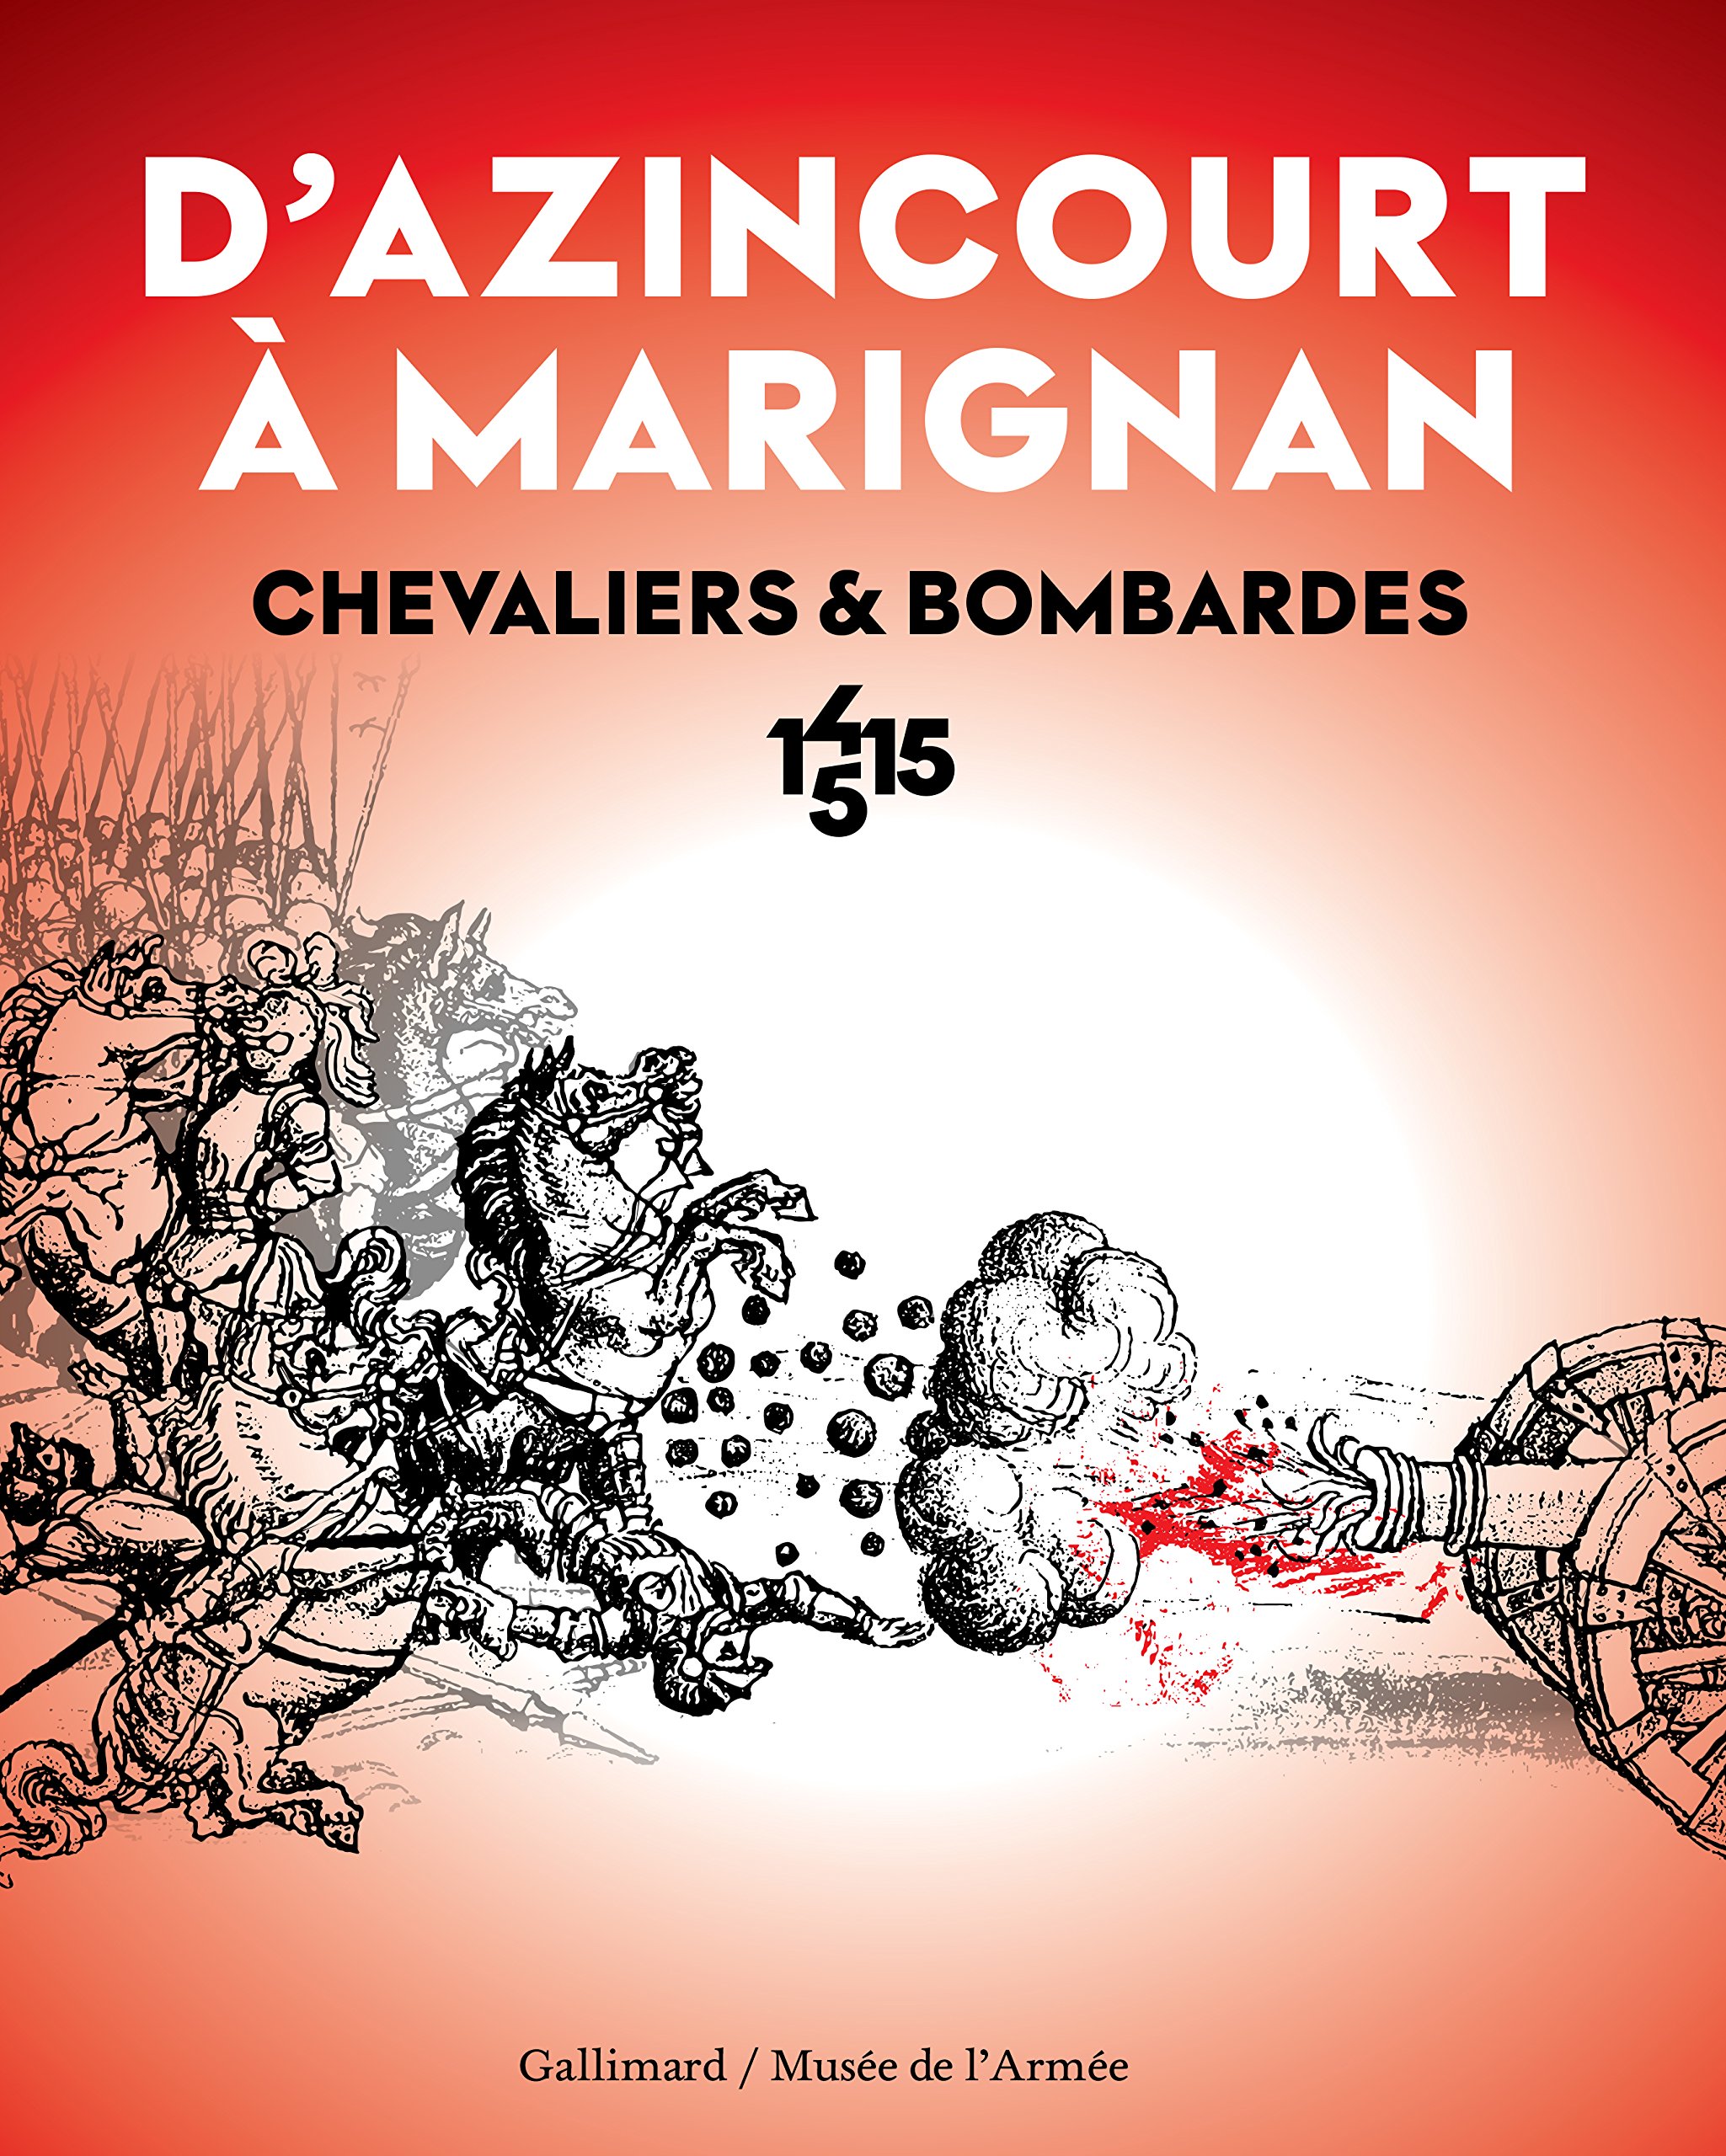 D'Azincourt à Marignan. Chevaliers et bombardes, 1415-1515, (cat. expo. musée de l'Armée, oct. 2015-janv. 2016), 2015, 272 p.